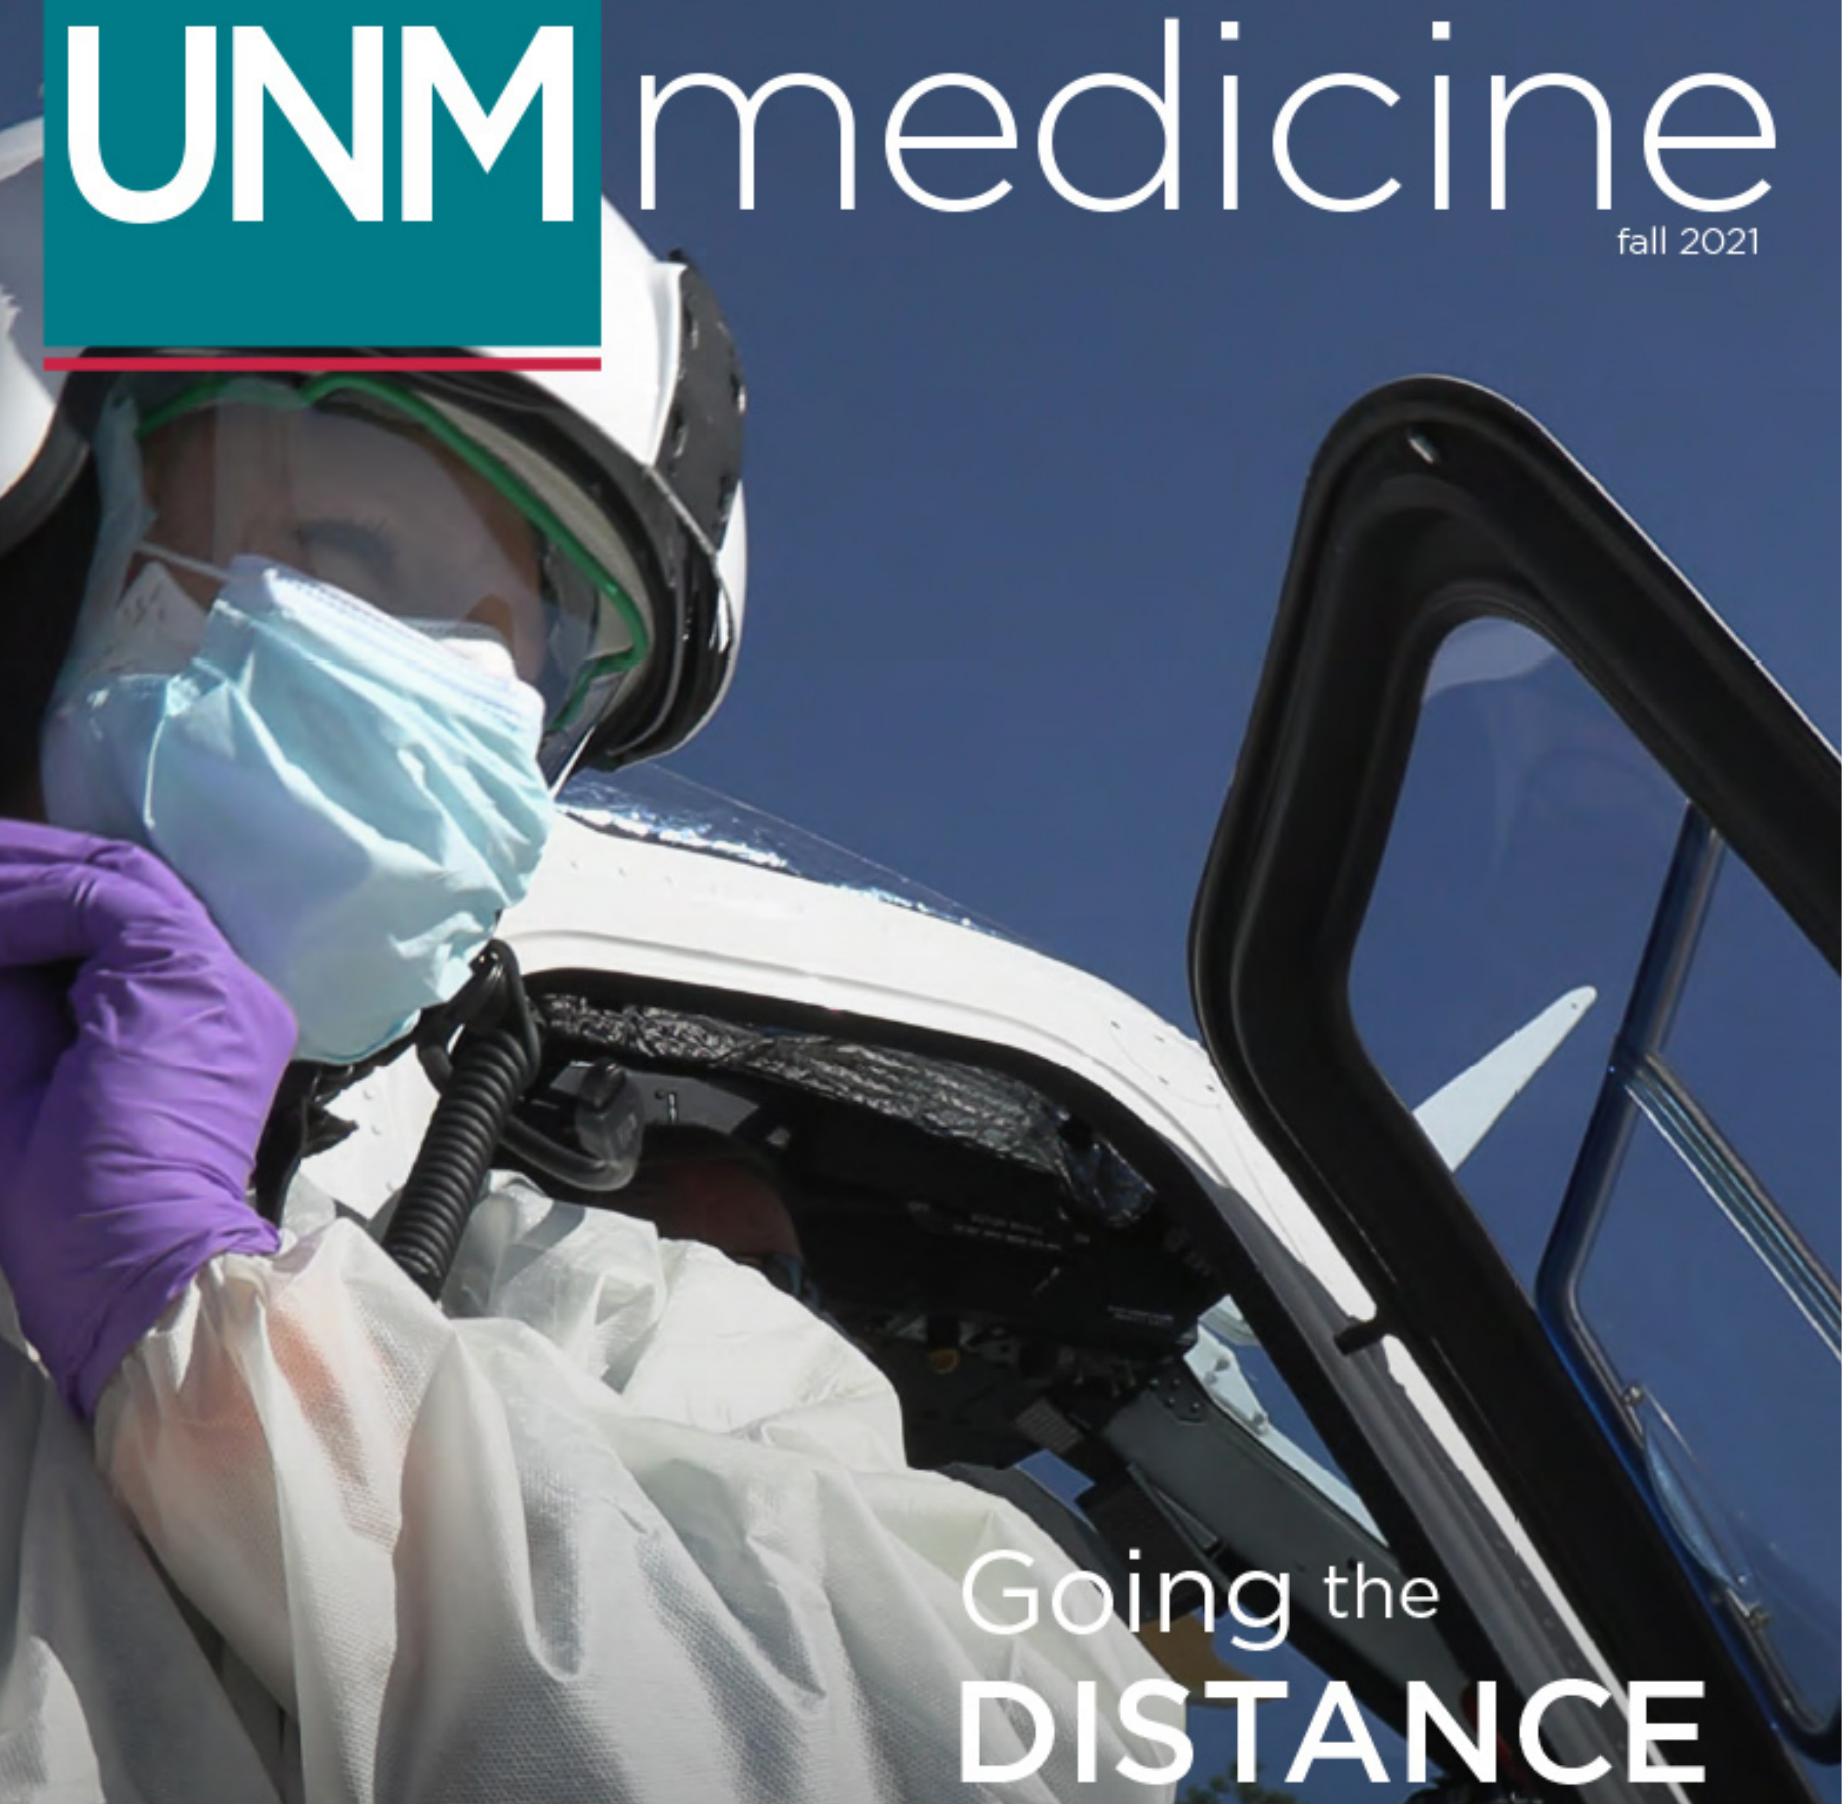 Обложка журнала UNM Medicine, весна 2021 г.